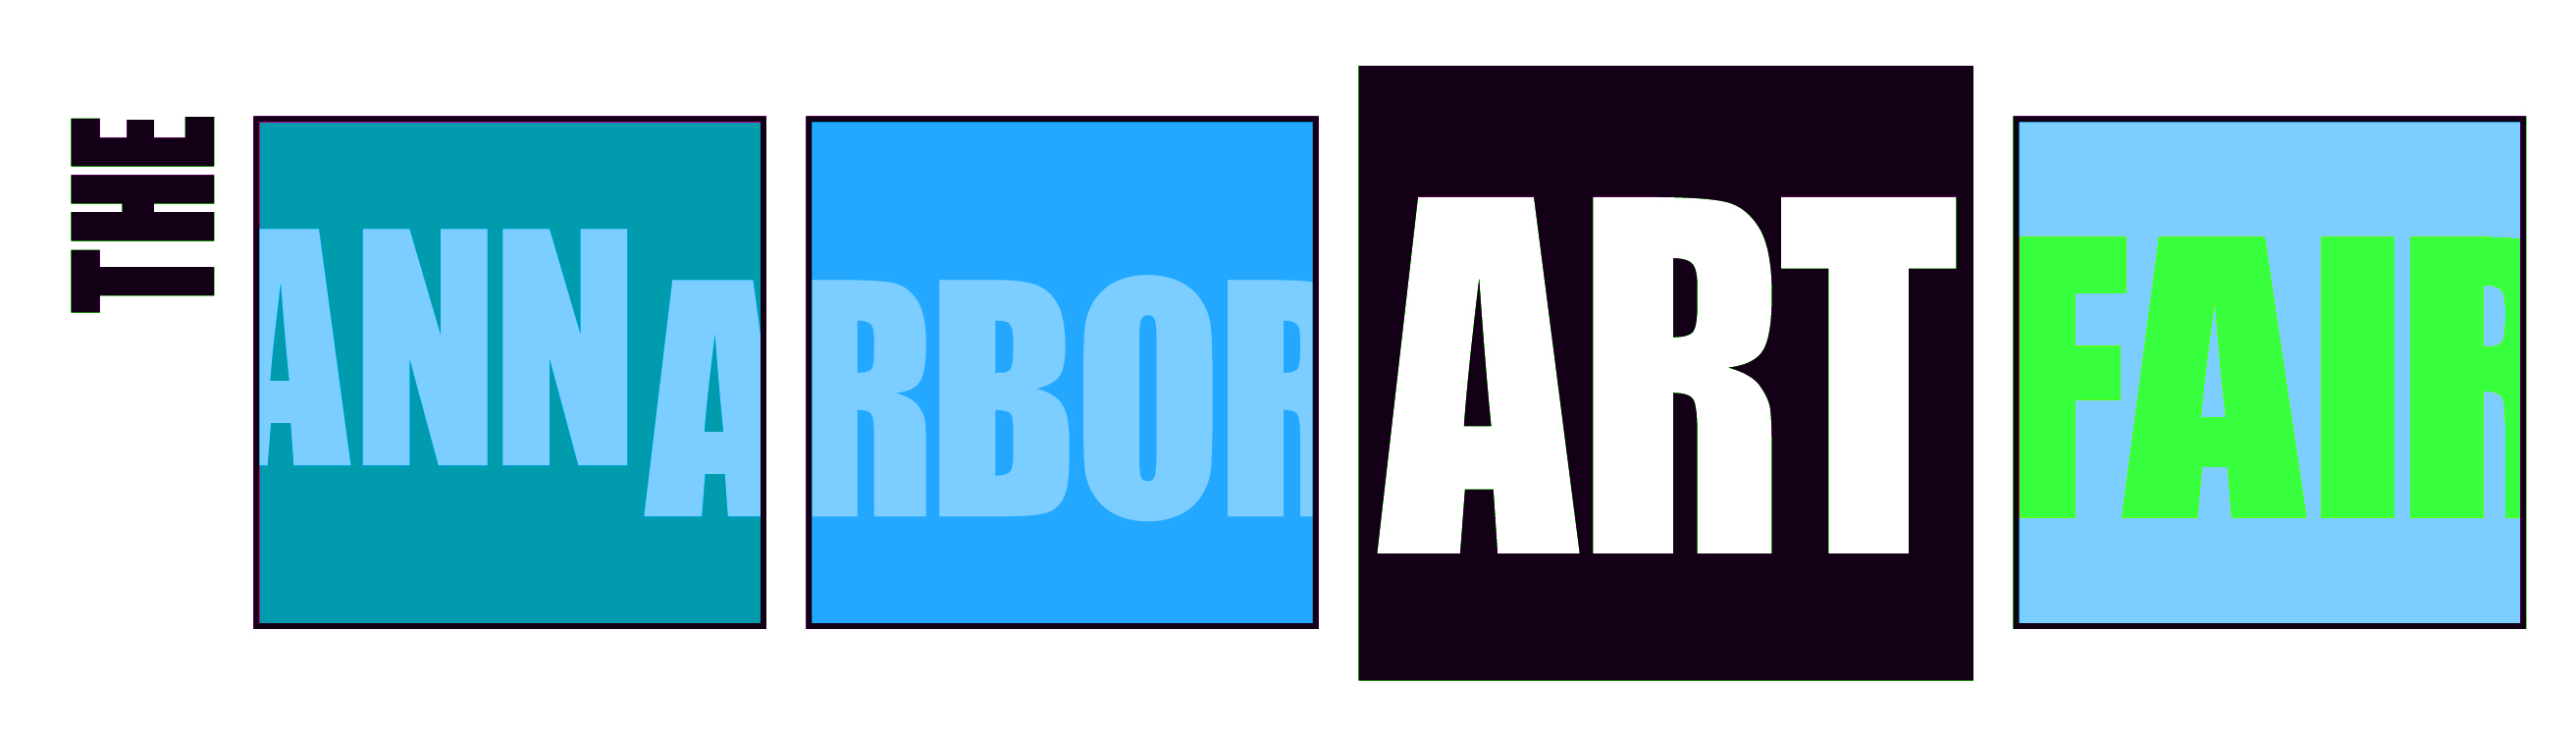 Feature_ArtFair_Logo